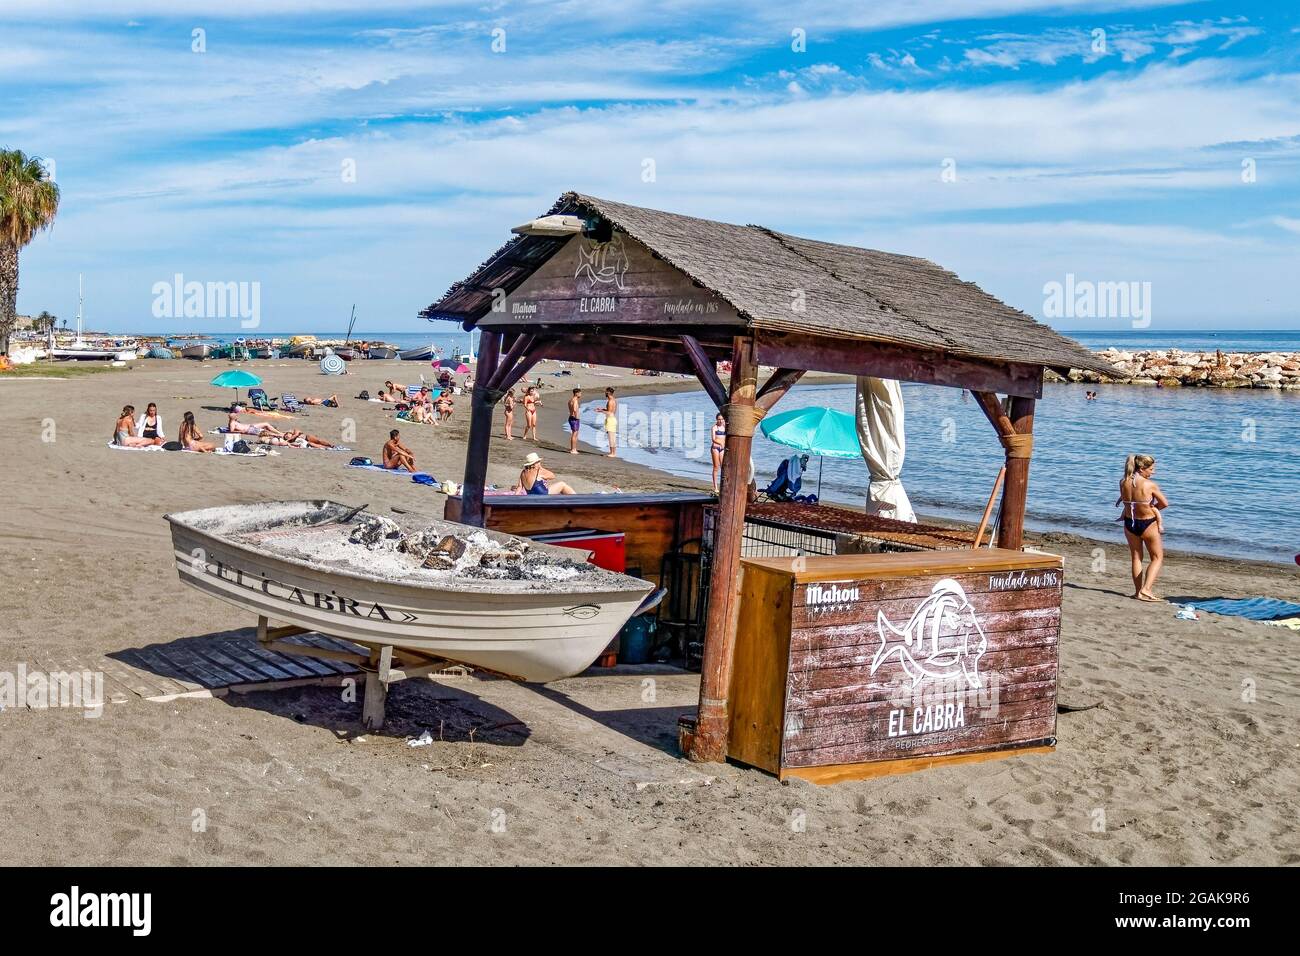 Pedregalejo Strand, Chiringuito,  Strandgrill, Malaga, Malaga, Costa del Sol, Provinz Malaga, Andalusien, Spanien, Europa, Stock Photo